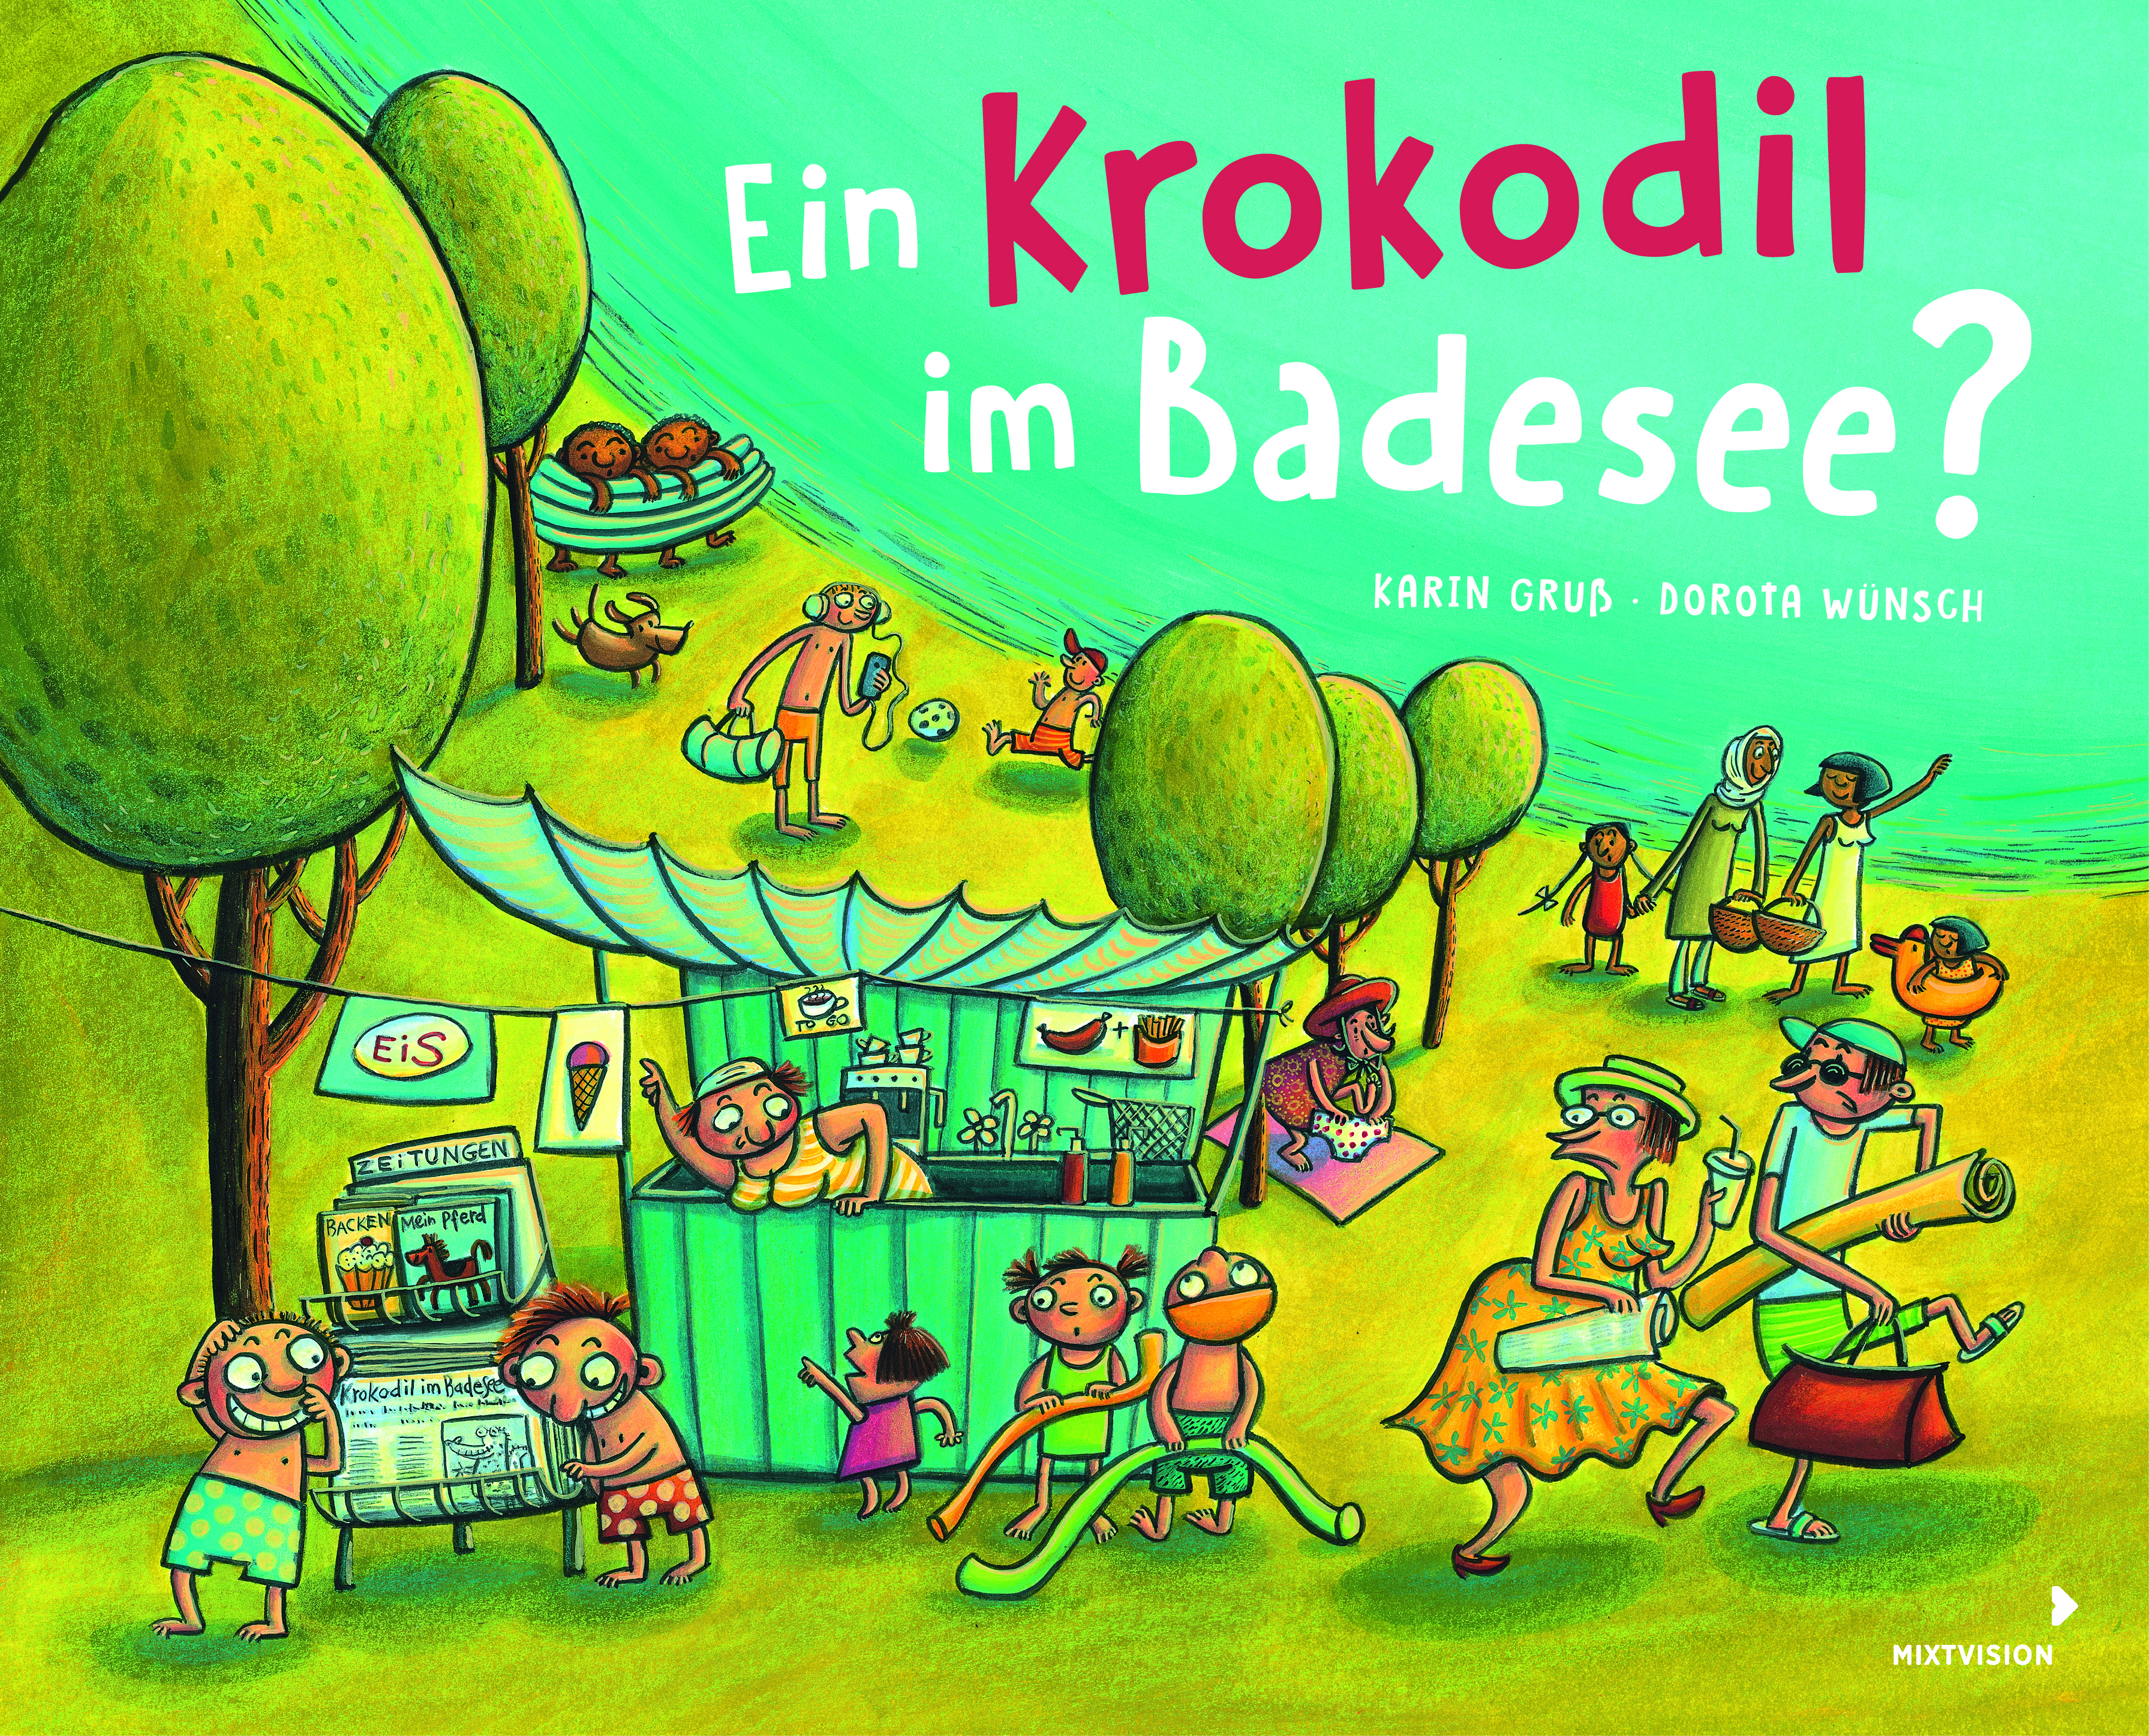 Buchcover "Ein Krokodil im Badesee?", Mixtvision